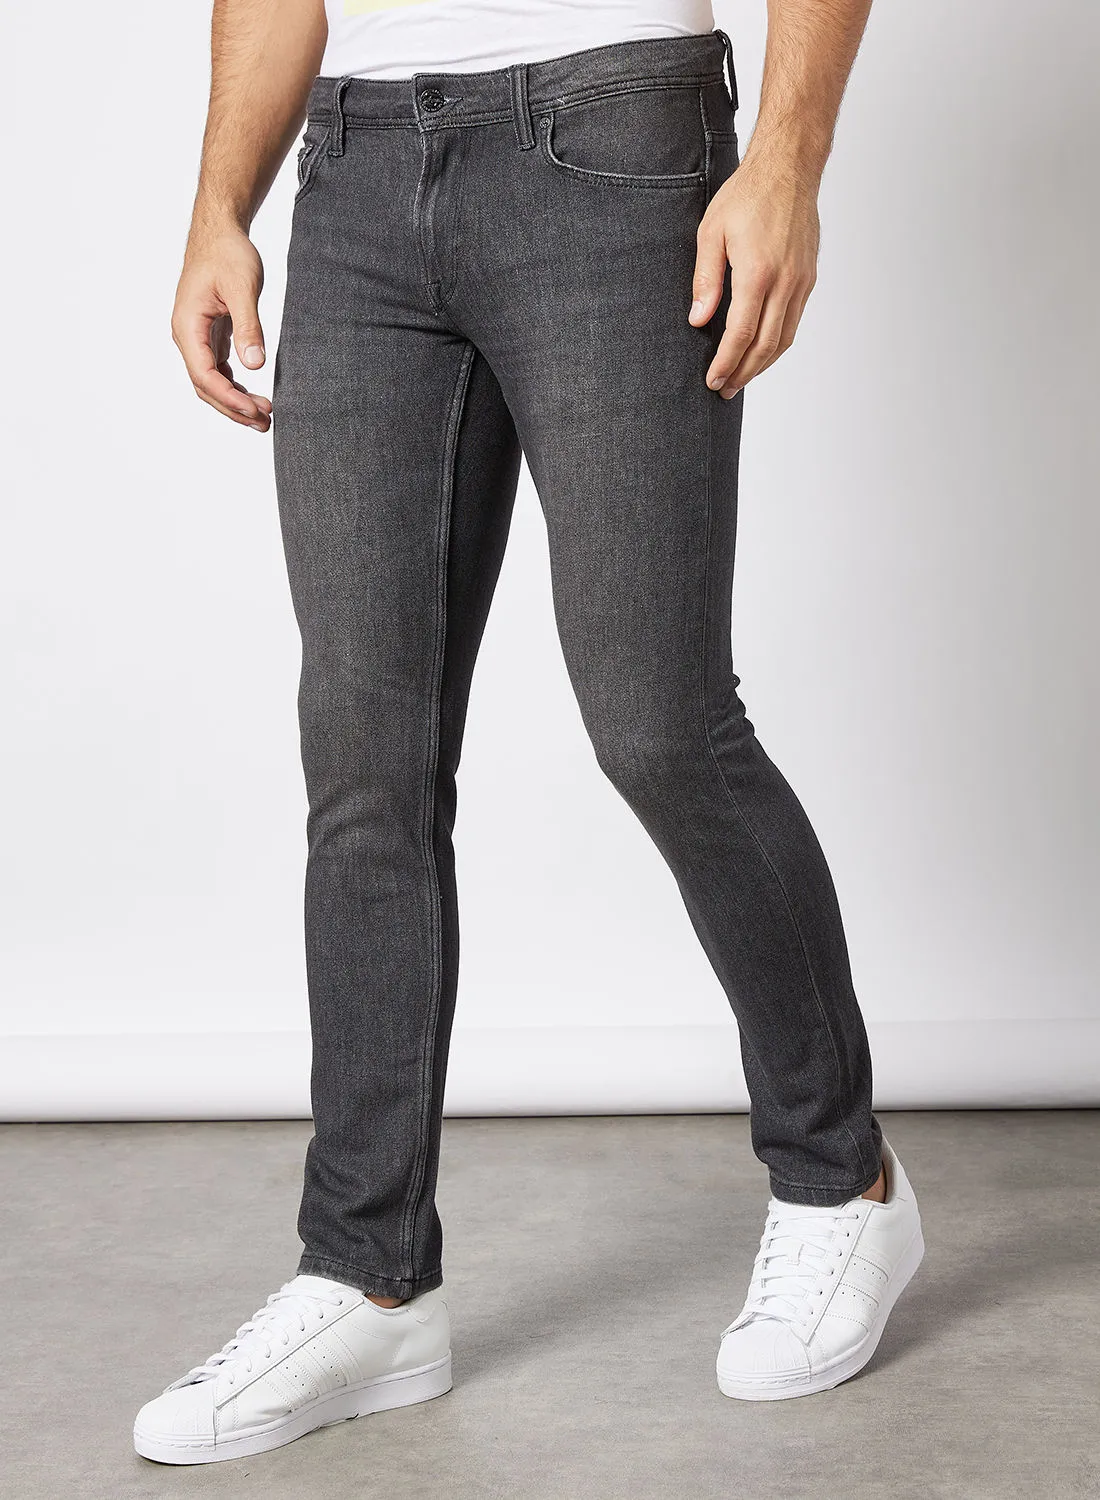 ONLY & SONS Essential Slim Fit Jeans Grey الداكن